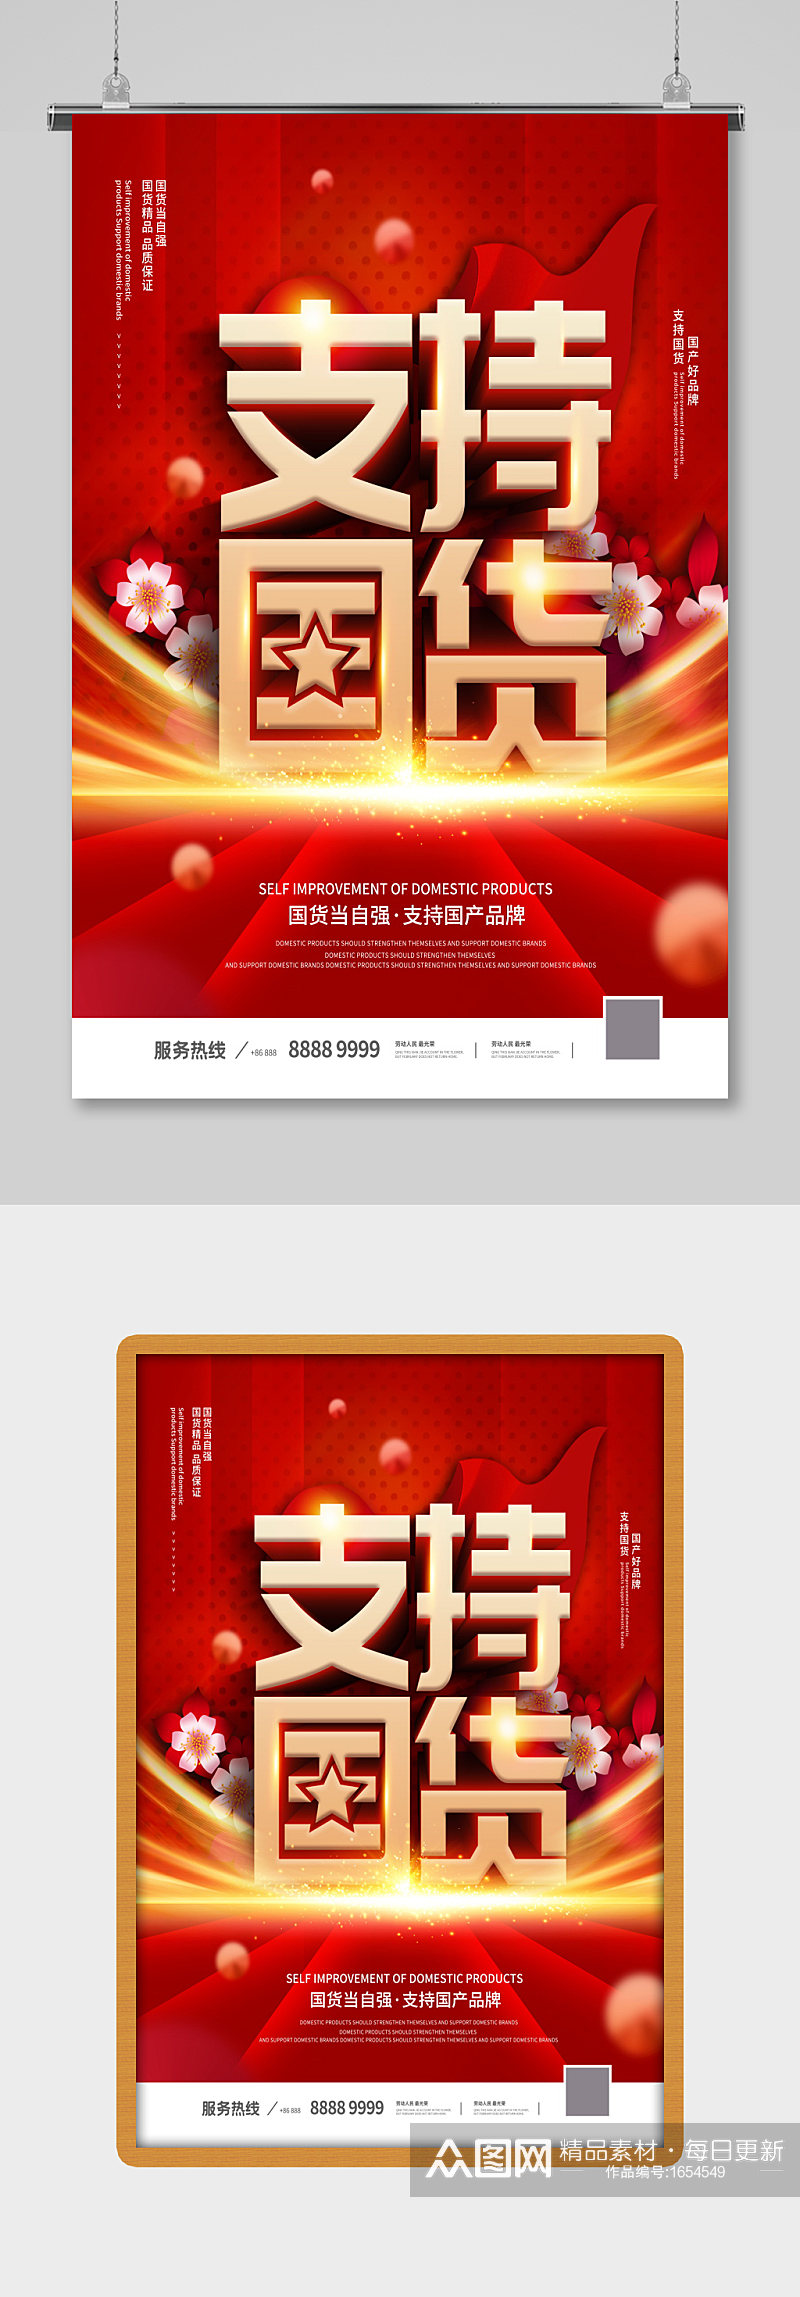 红色大气支持国货公益宣传海报素材